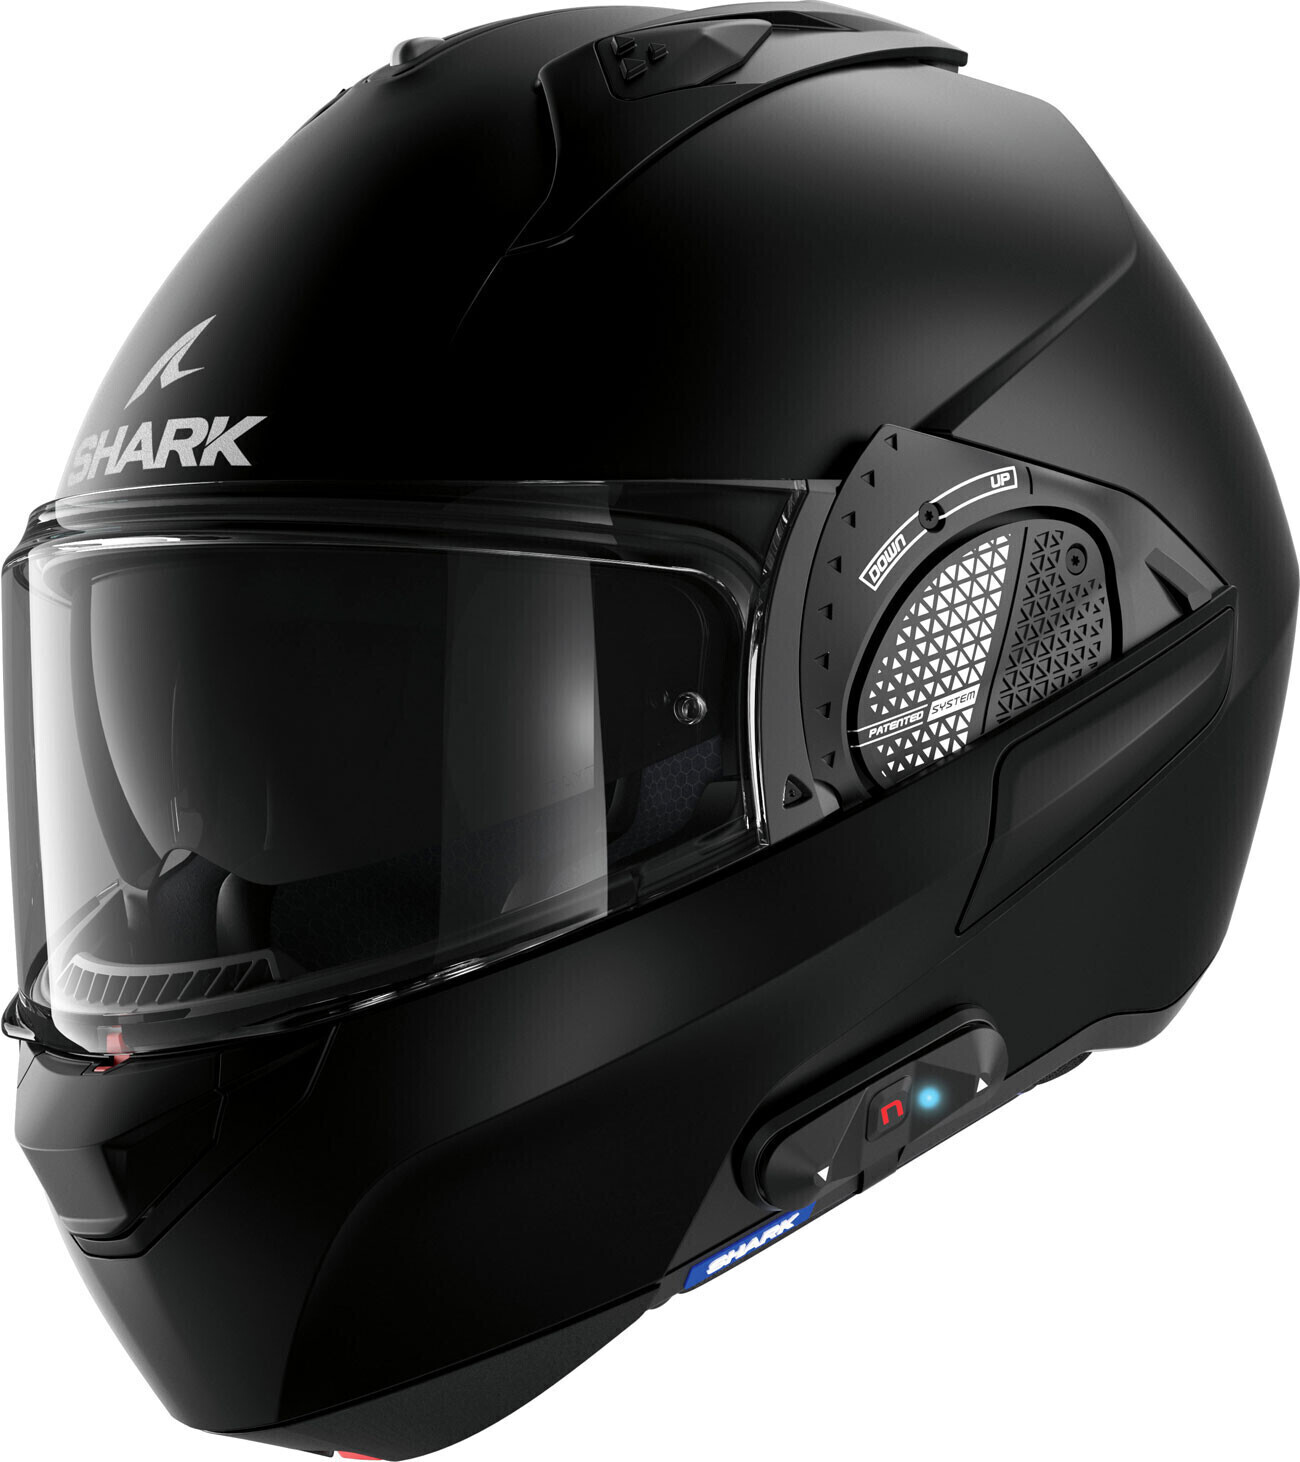 Photos - Motorcycle Helmet SHARK Evo GT N-COM B802 Matt black 